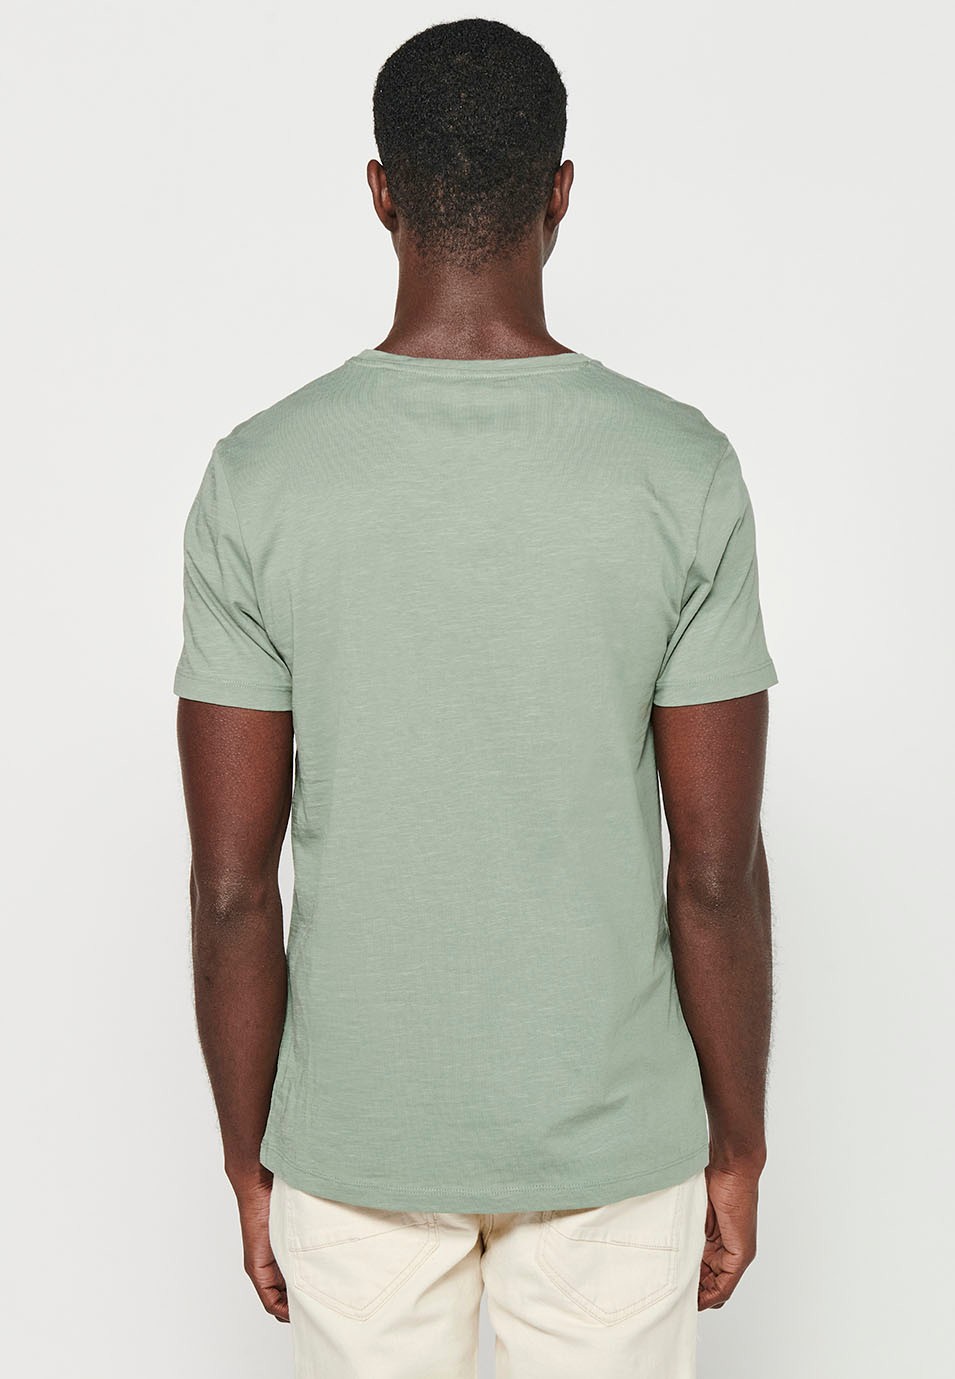 Men's Khaki Color Front Print Round Neck Cotton Short Sleeve T-Shirt 3